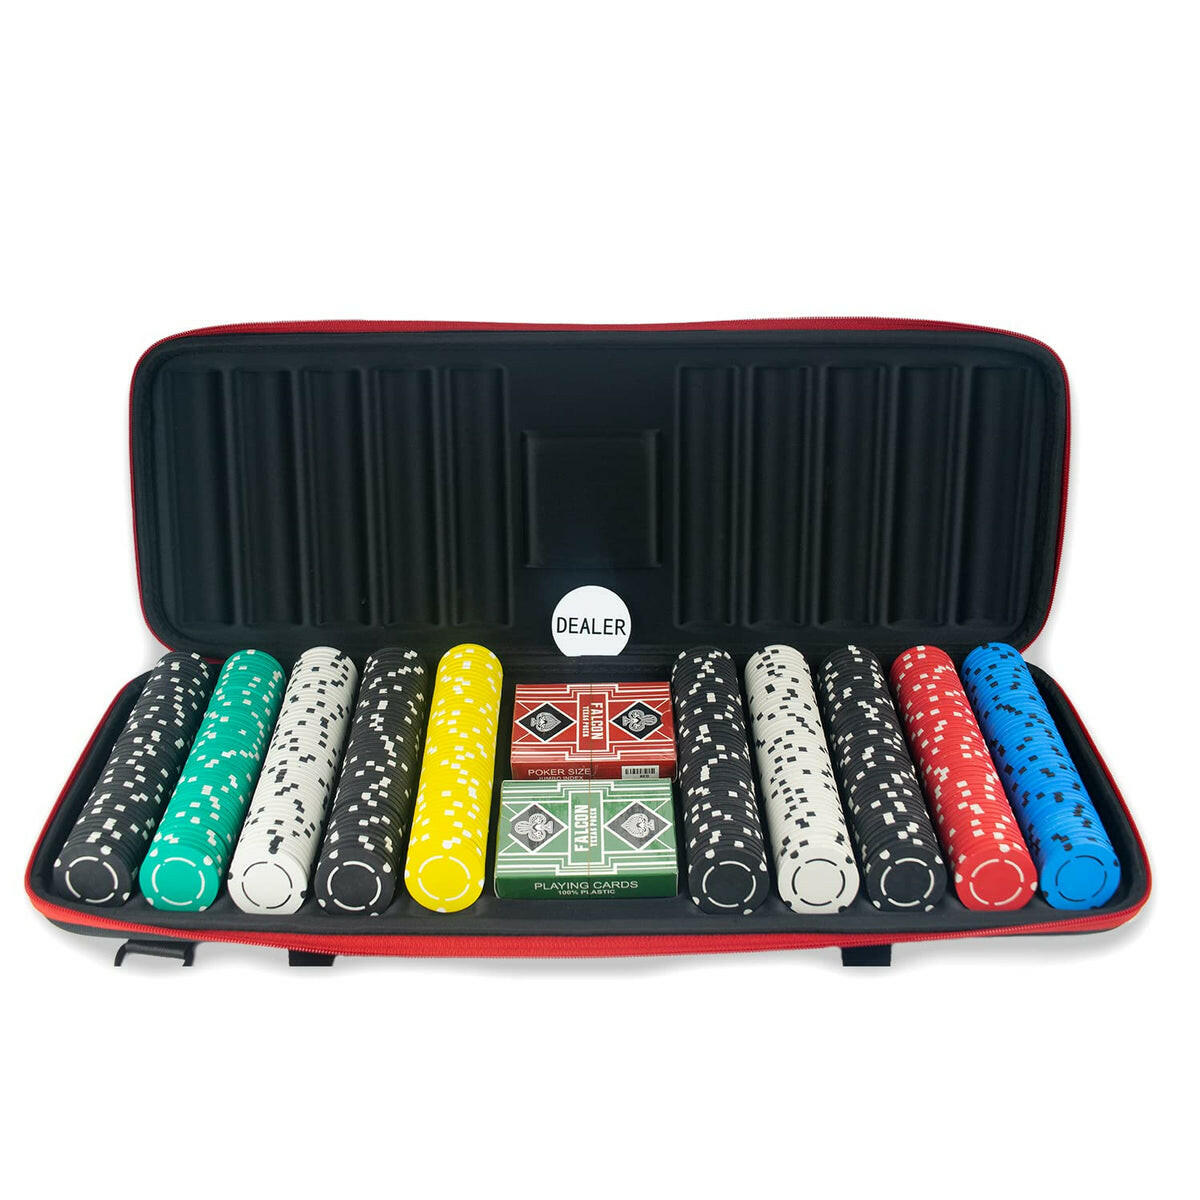 Buy Online Casinokart 300 Pieces Clay Poker Chip Set At Price